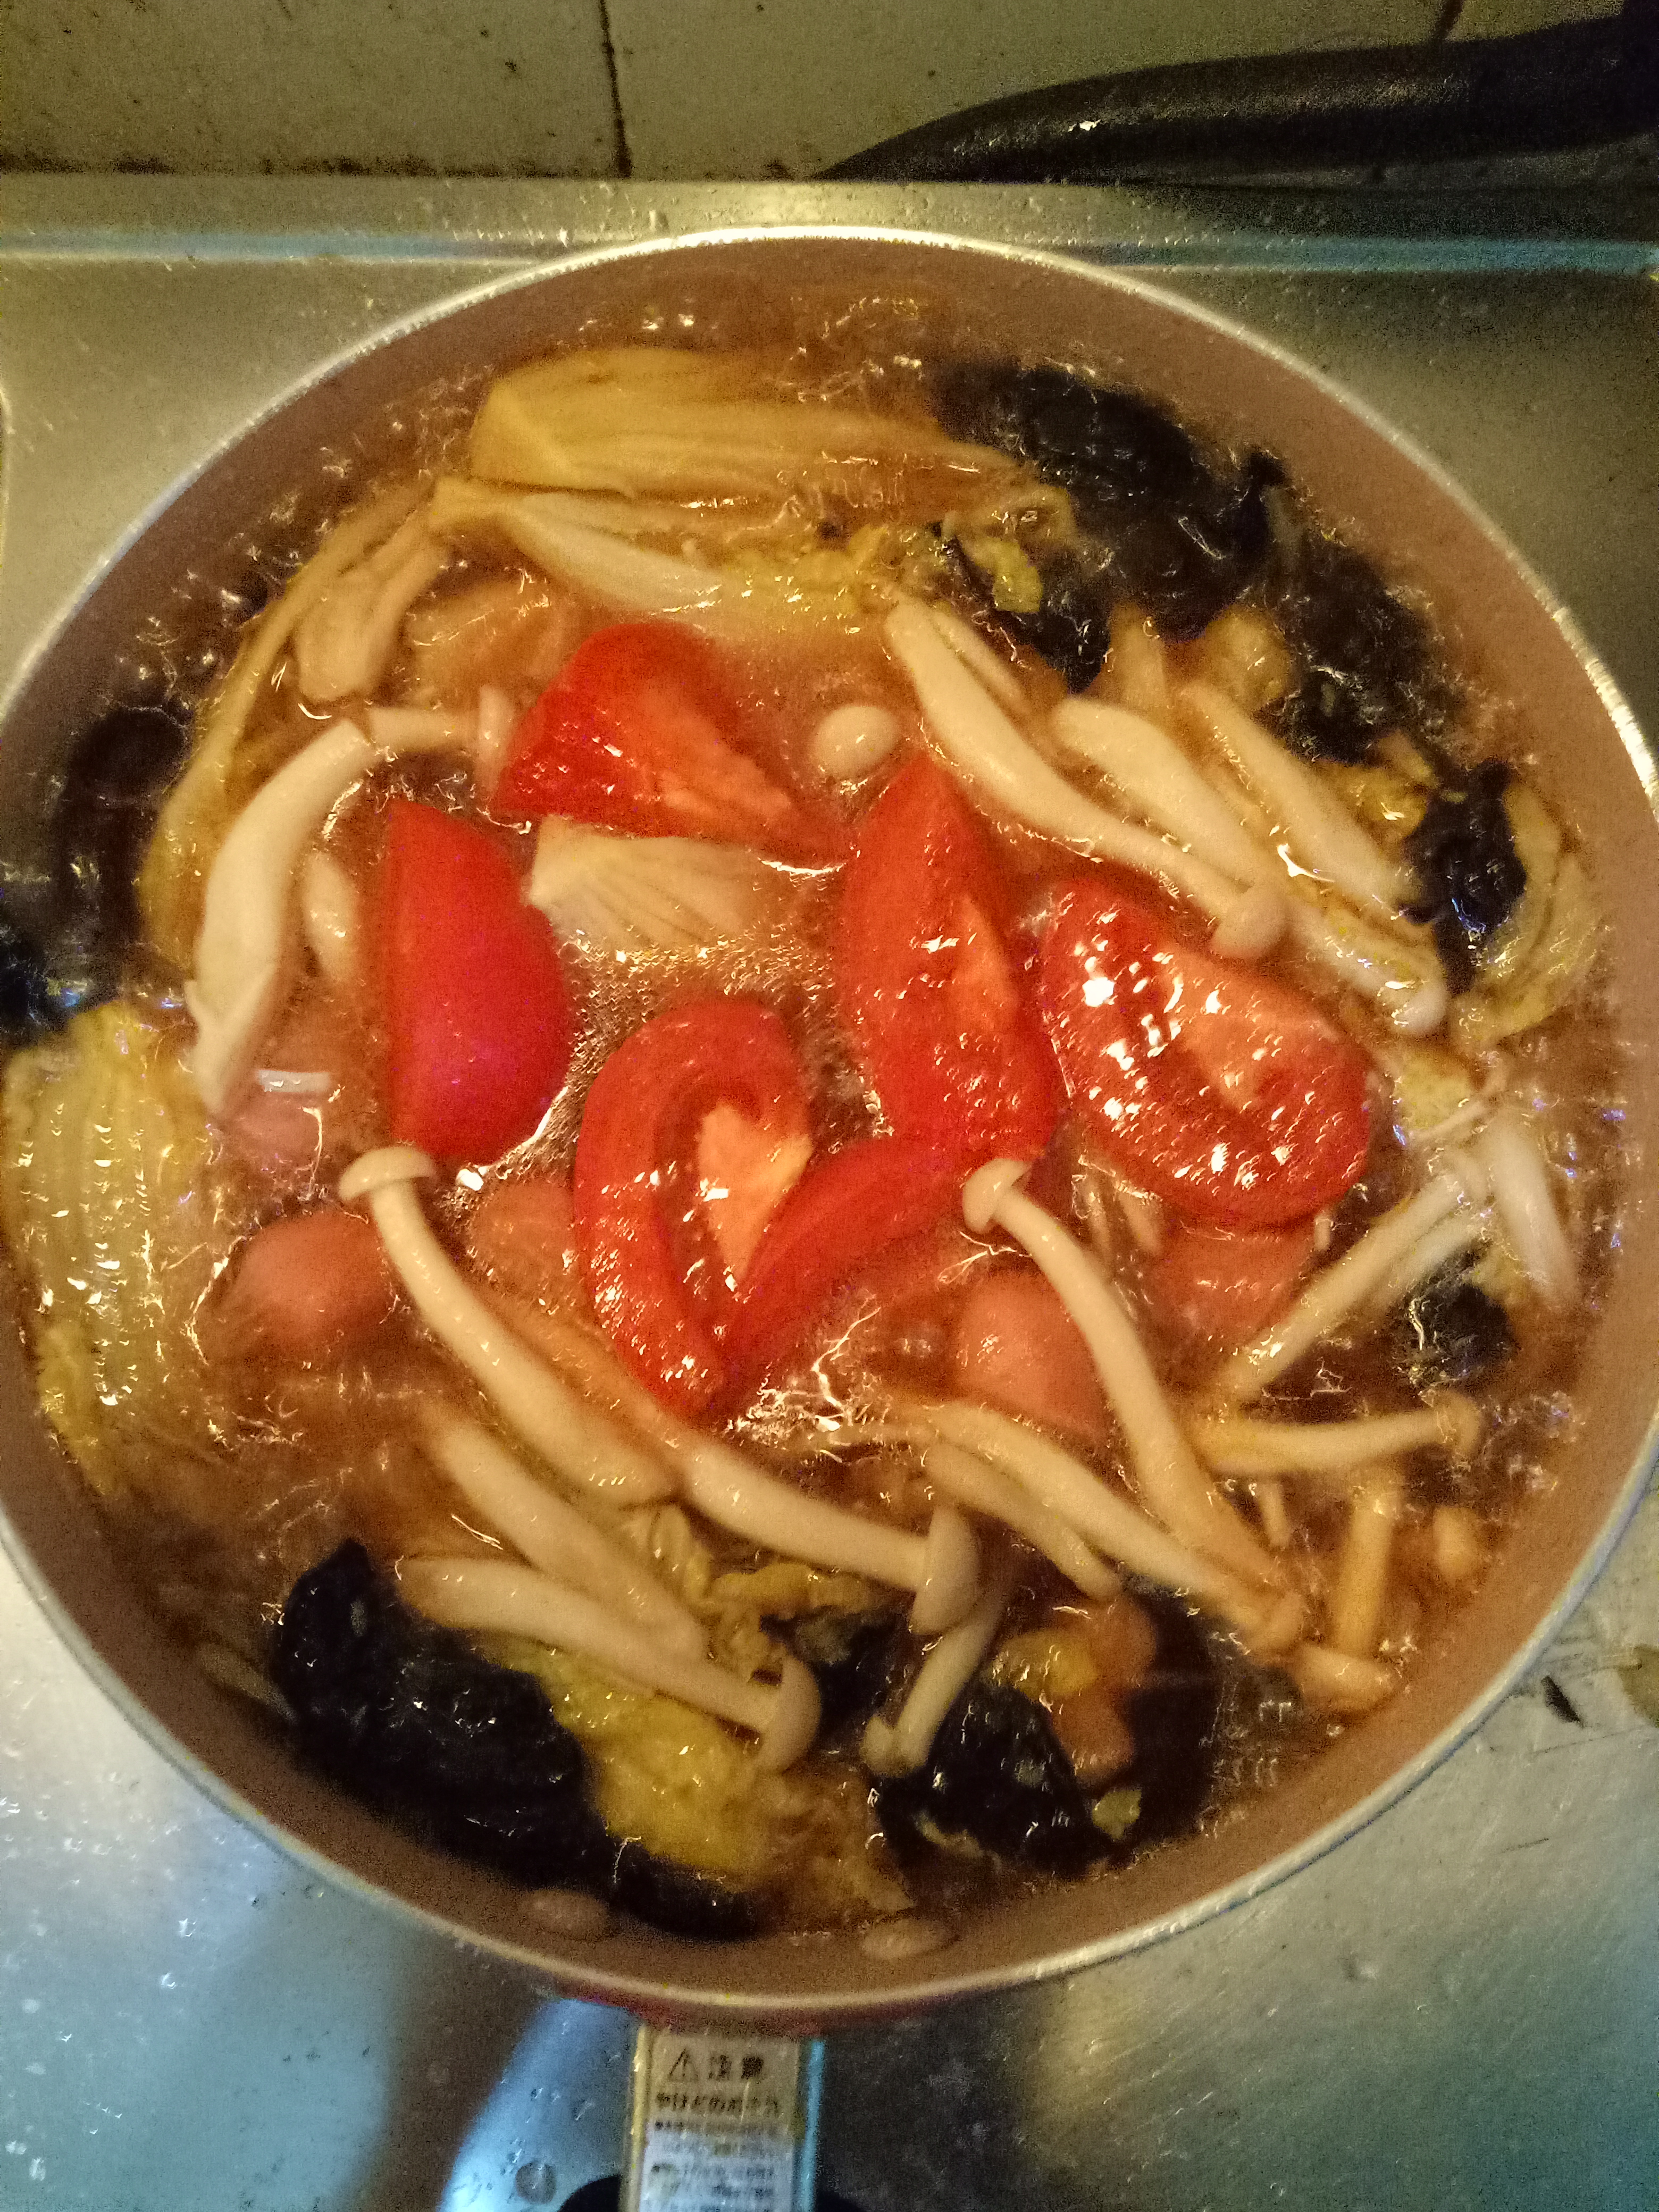 热锅冷油下切好的蒜瓣炒香,然后下泡好切好的香菇和木耳.